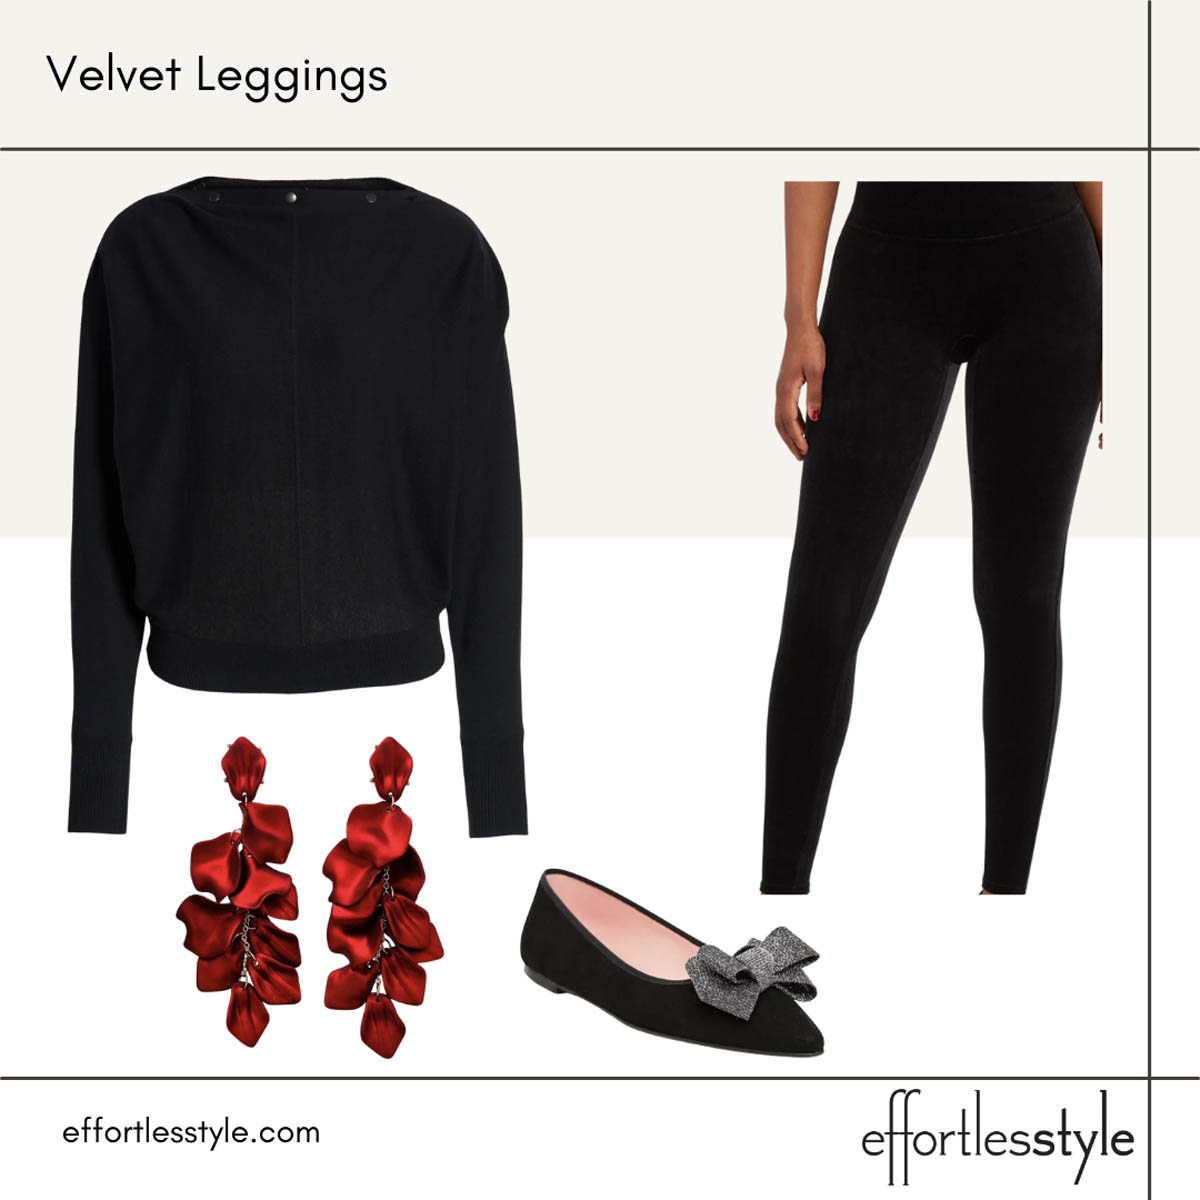 Velvet Leggings - Effortless Style Nashville